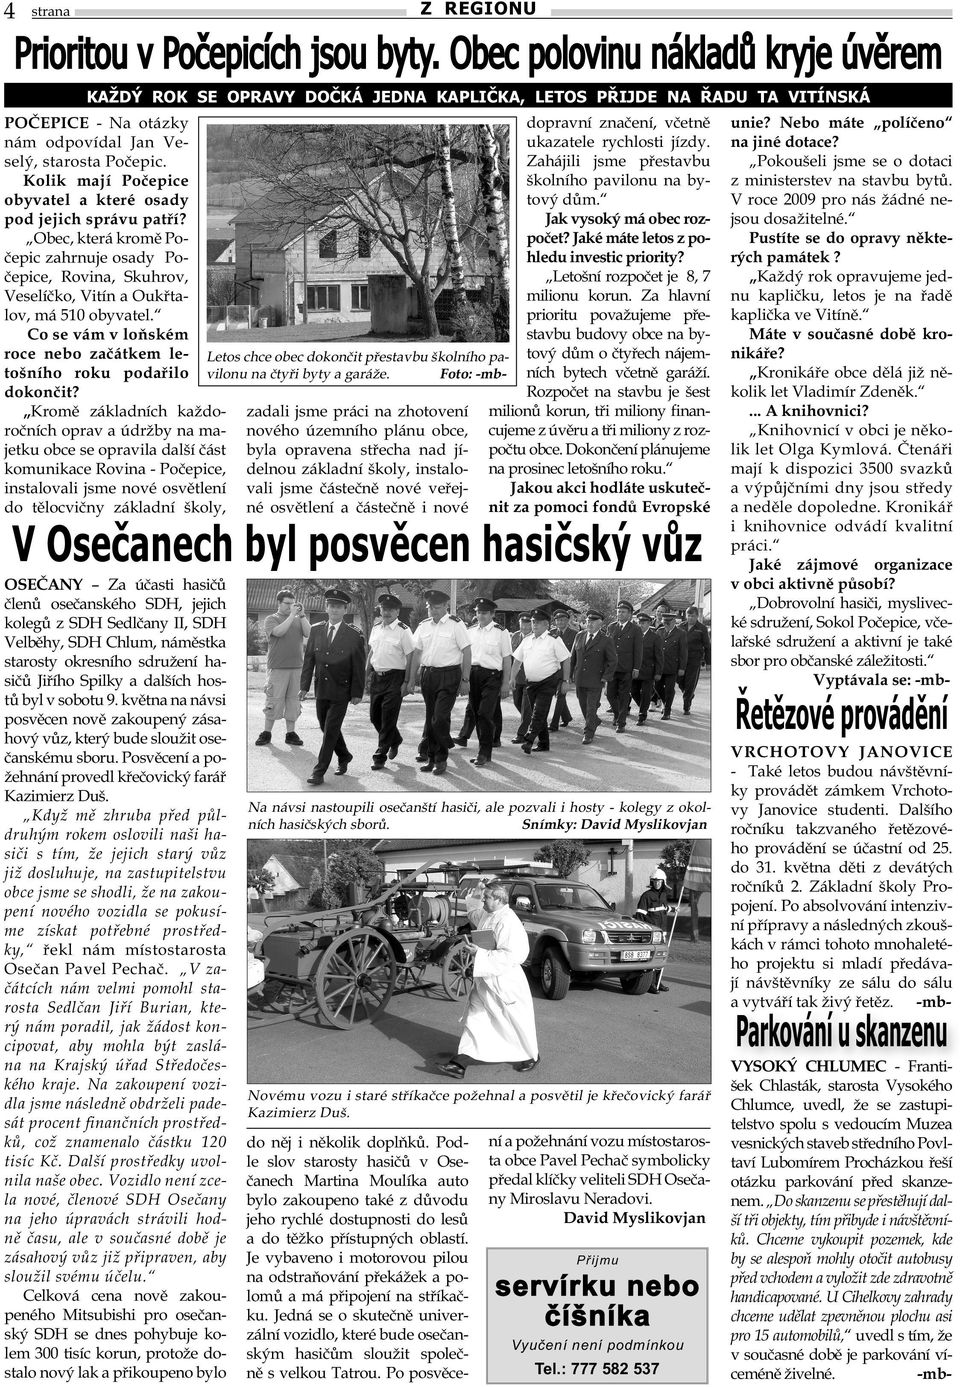 Kolik mají Počepice obyvatel a které osady pod jejich správu patří? Obec, která kromě Počepic zahrnuje osady Počepice, Rovina, Skuhrov, Veselíčko, Vitín a Oukřtalov, má 510 obyvatel.